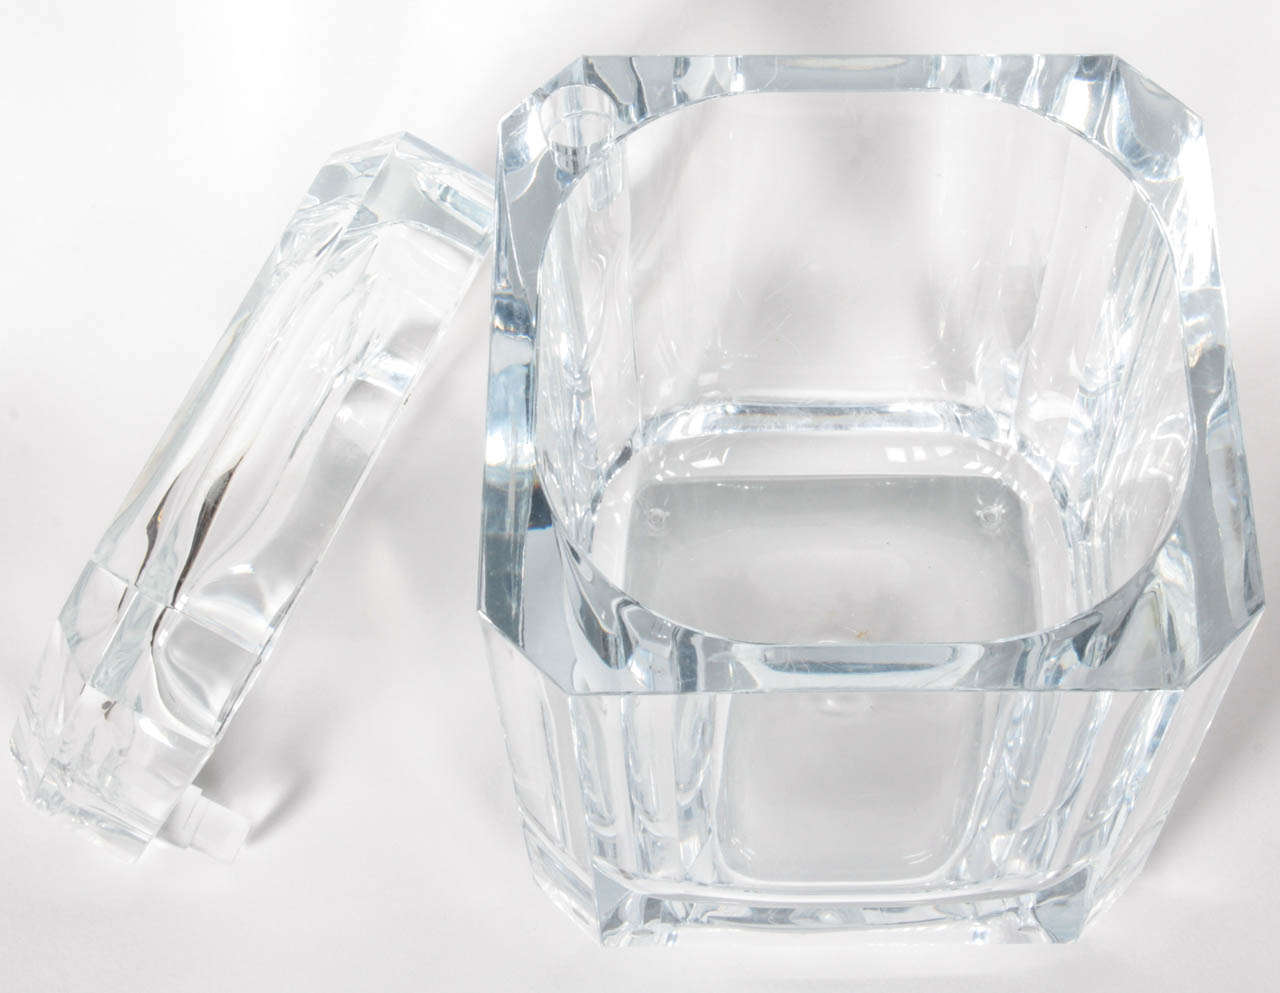 acrylic ice bucket with lid